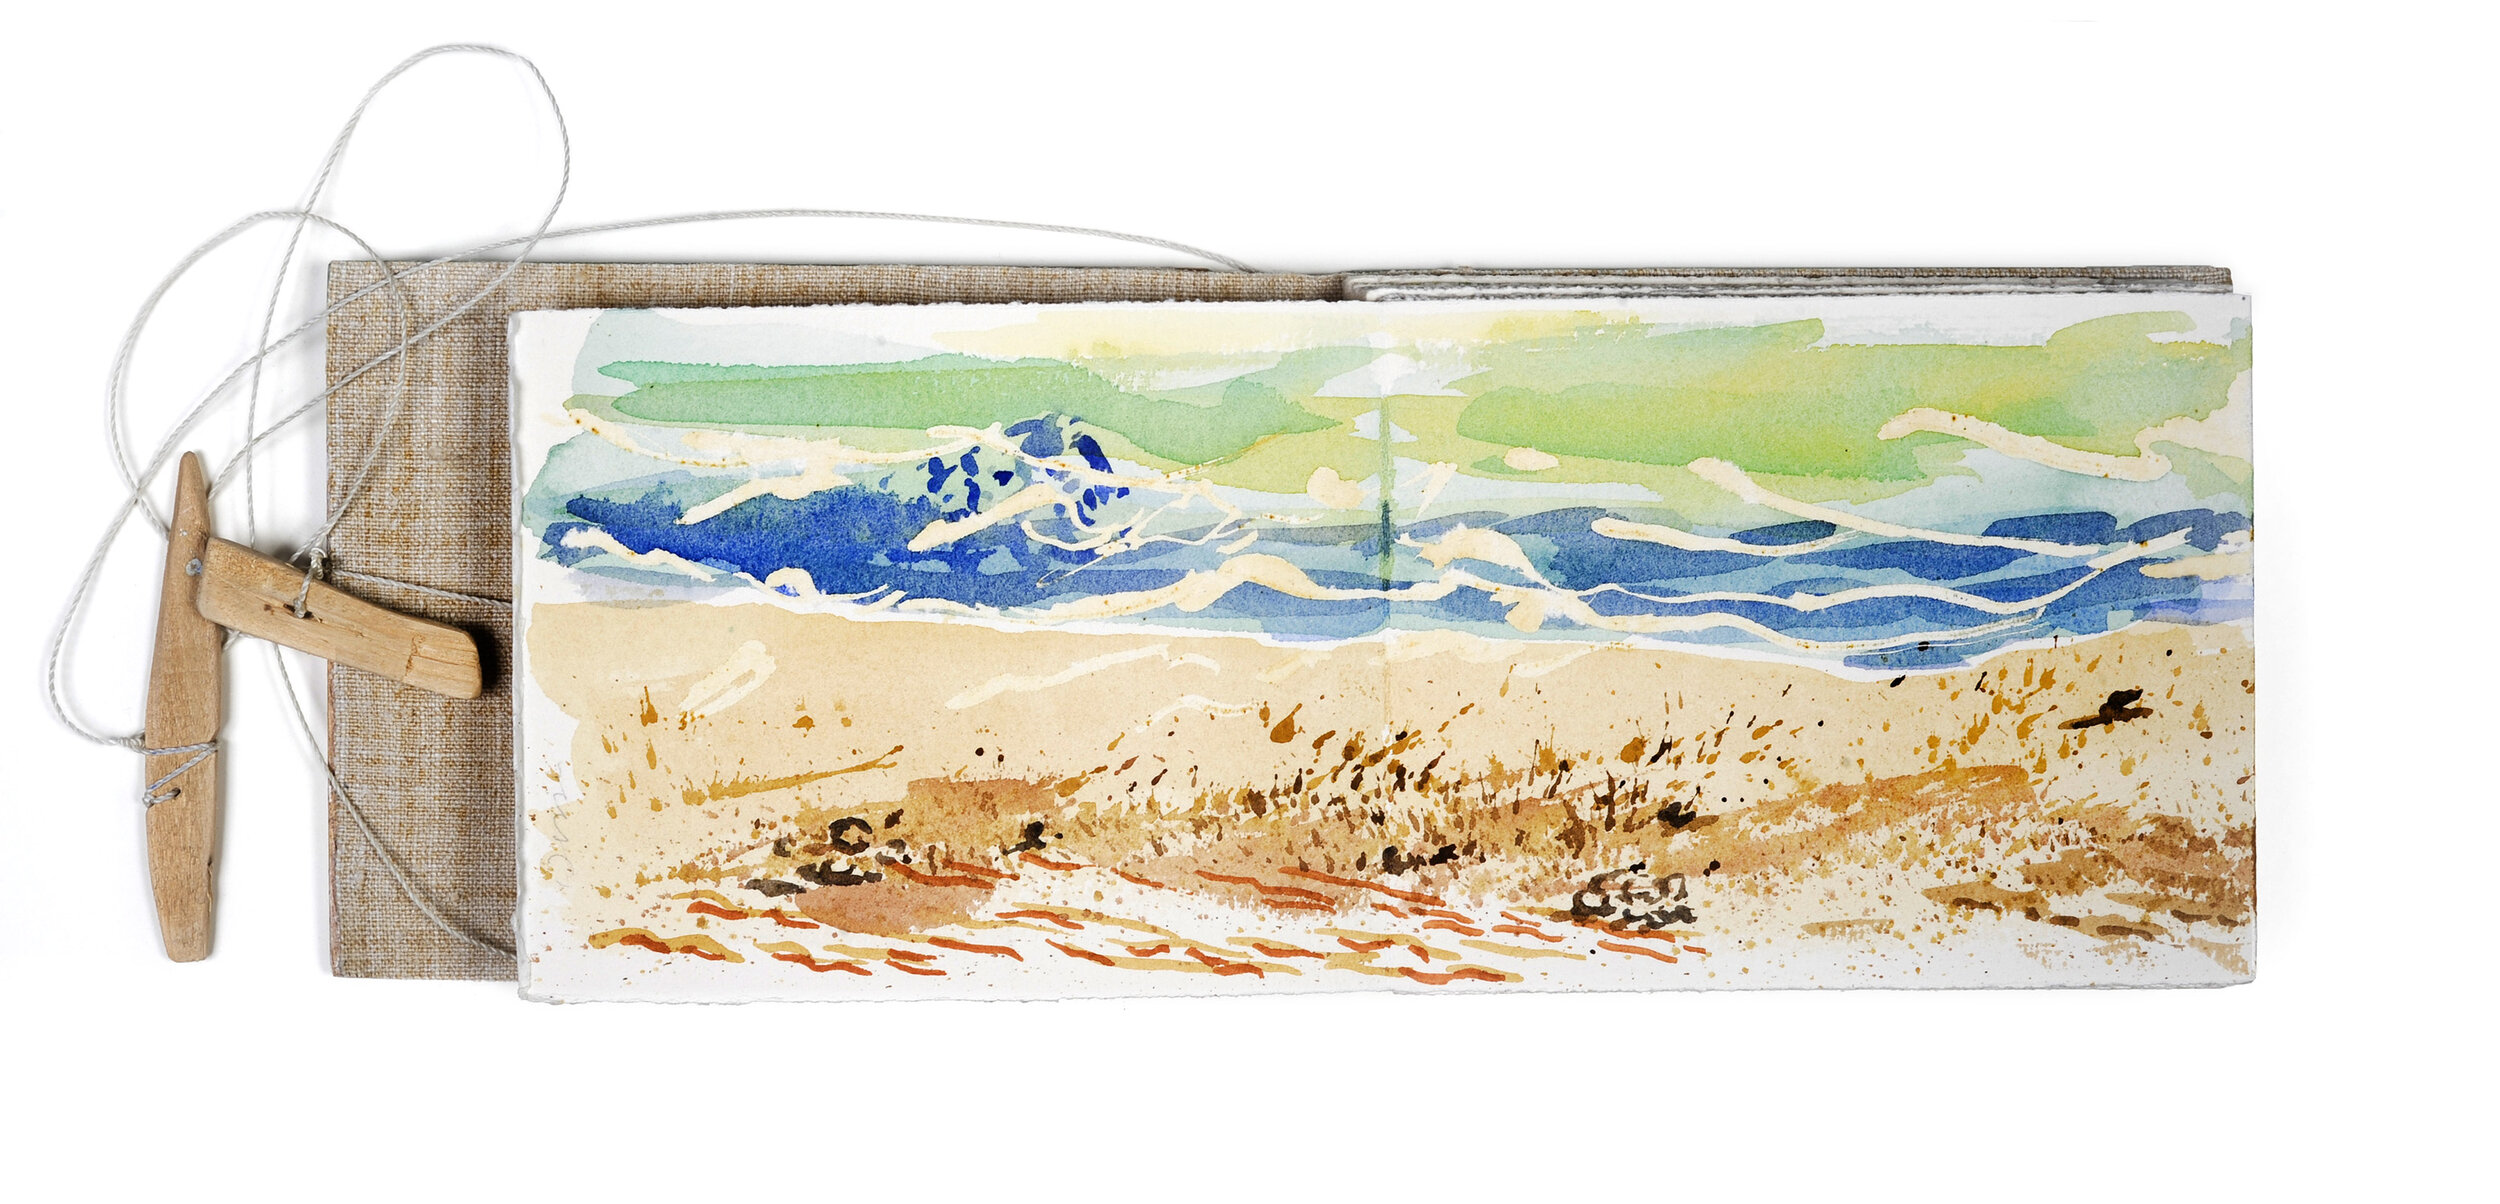  Le lai et le relai, Wissant, 21 avril 1997 8°, les falaises de Douvres sont visibles à l’horizon Carnet d’aquarelles sur Vélin d’Arches 270 g, 12,5 × 15,5 cm 